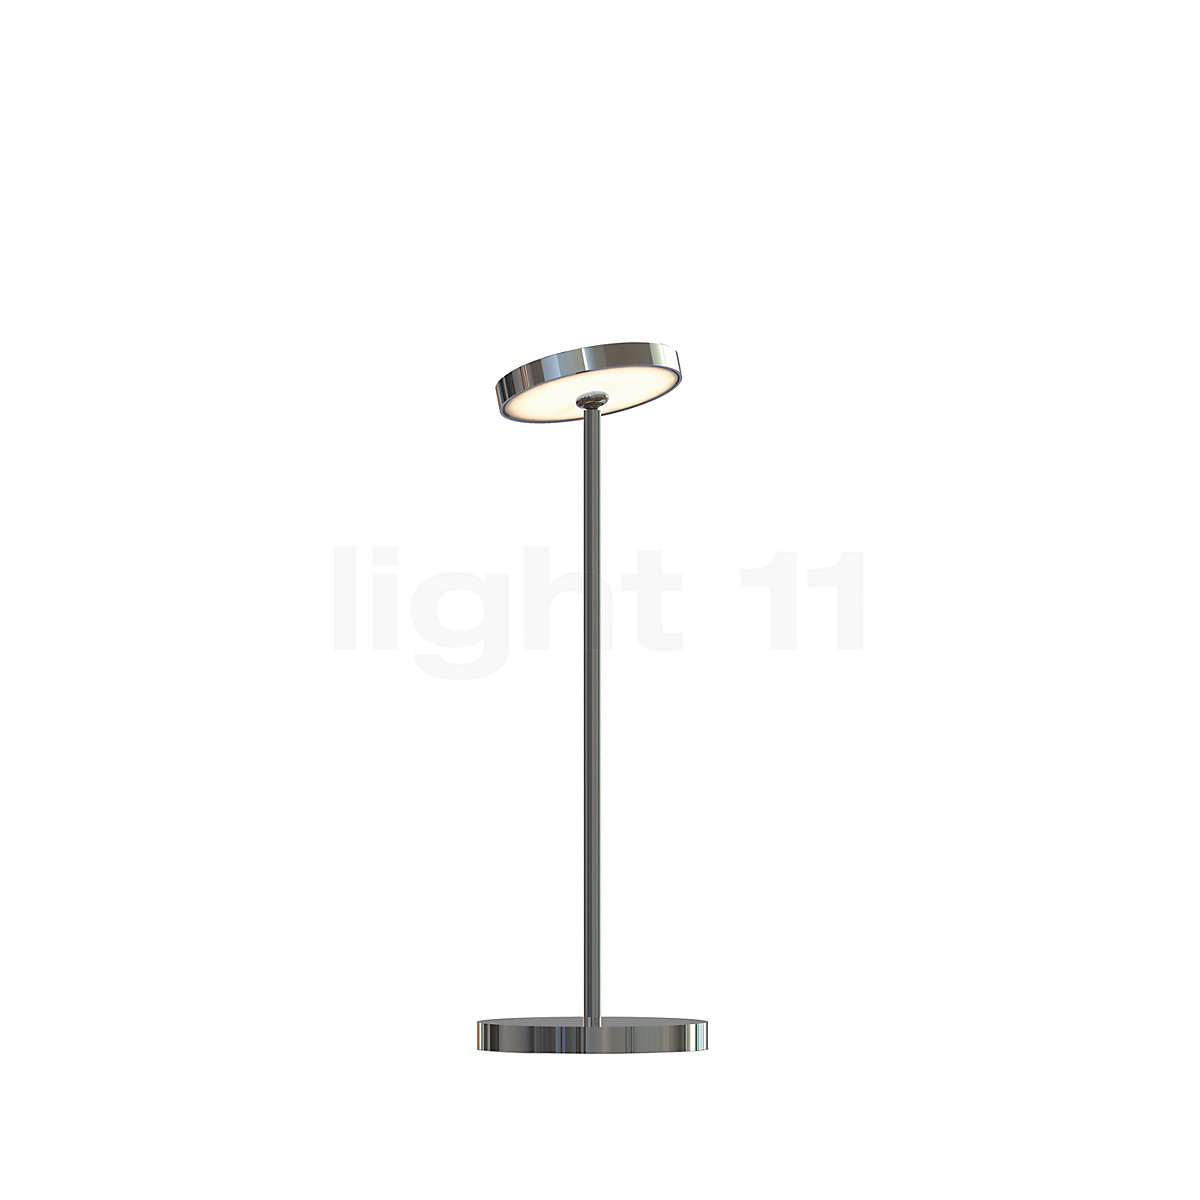 Light Sun Table Lamp ø9 Cm Large Led, Street Light Table Lamp